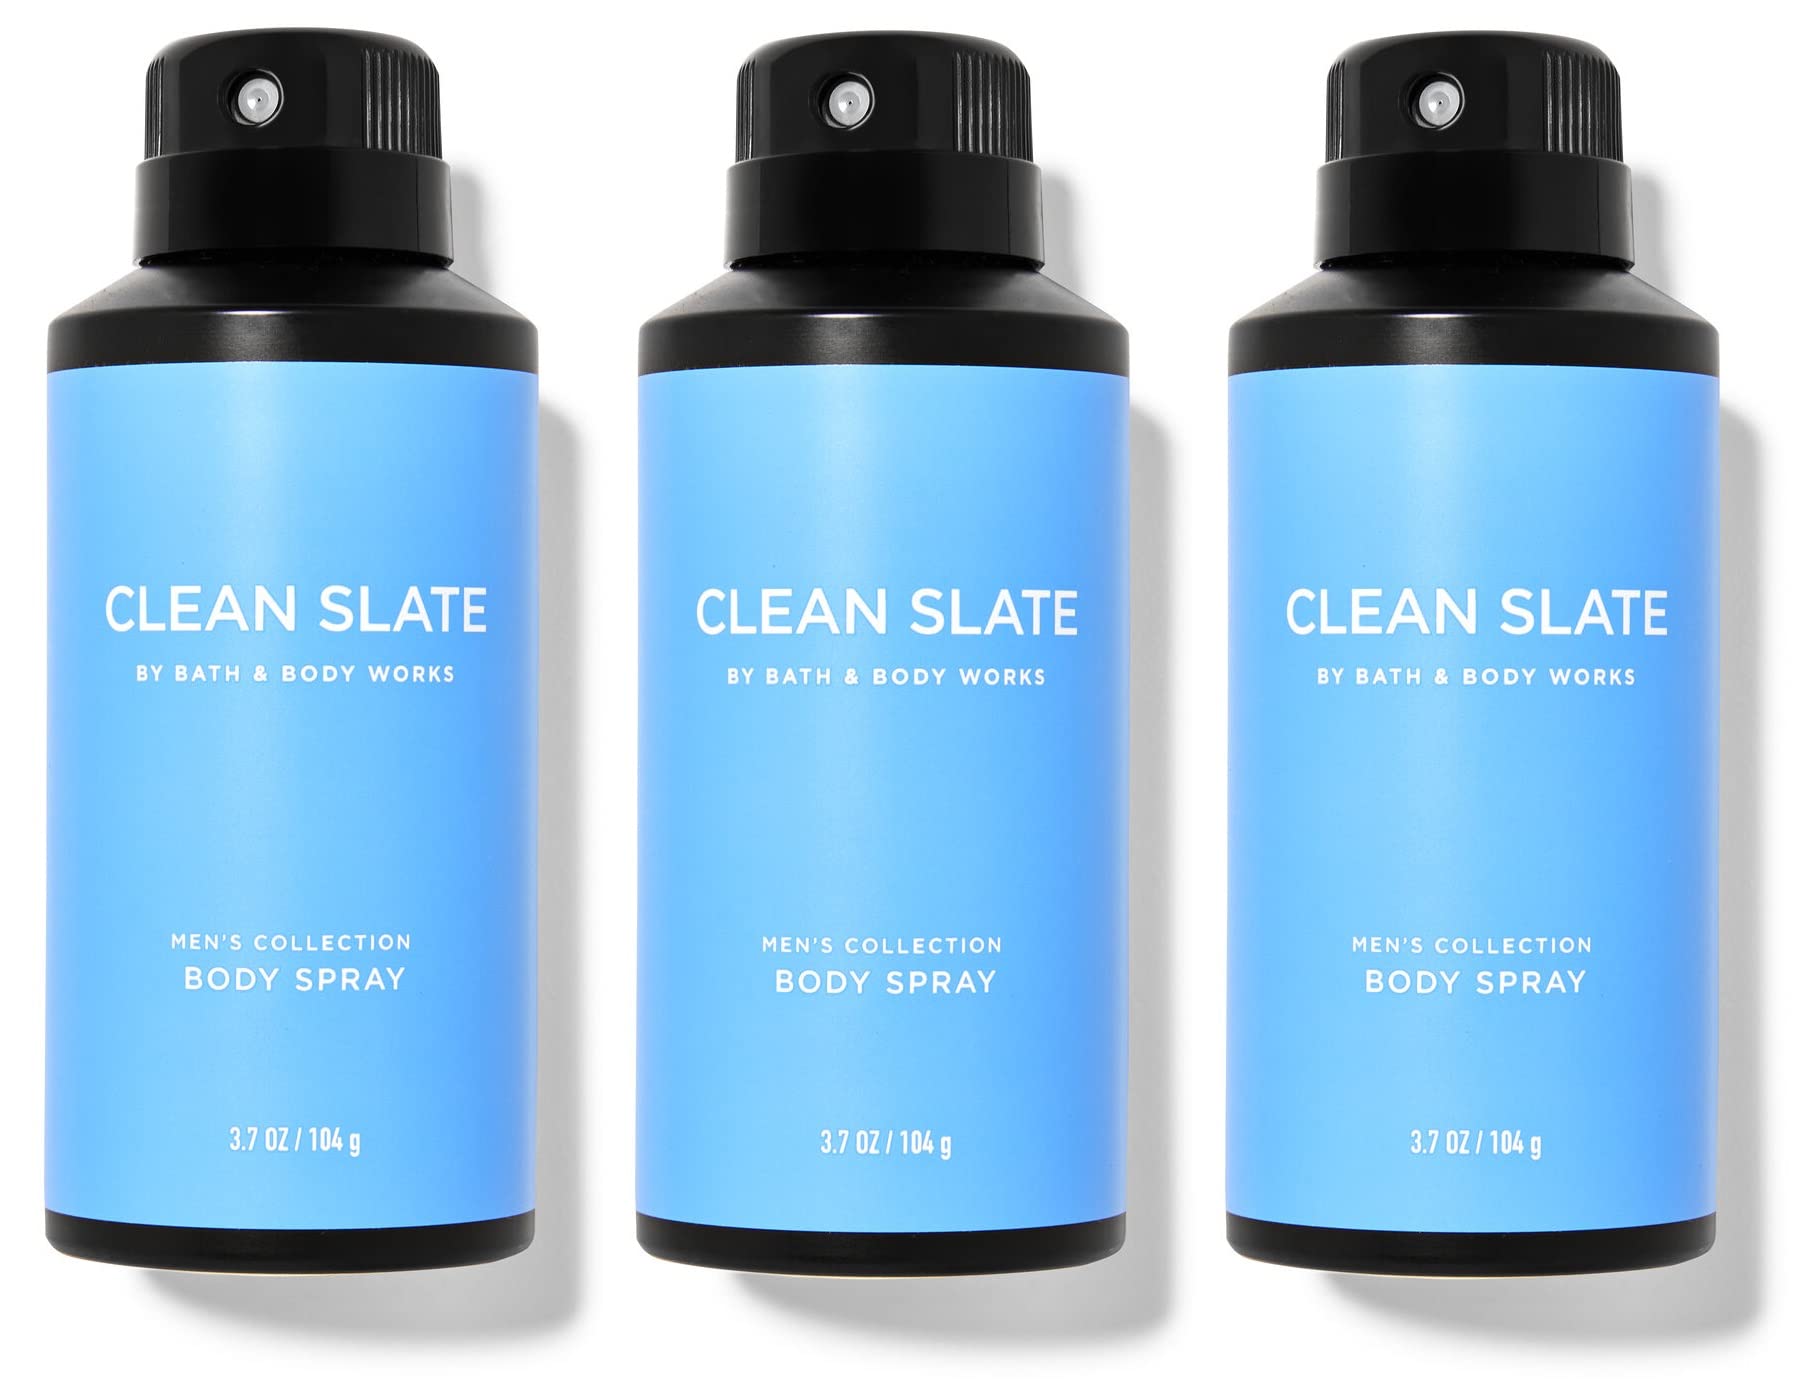 BATH & BODY WORKS CLEAN SLATE FOR MEN - Value Pack - Lot of 3 Body Spray -  FULL